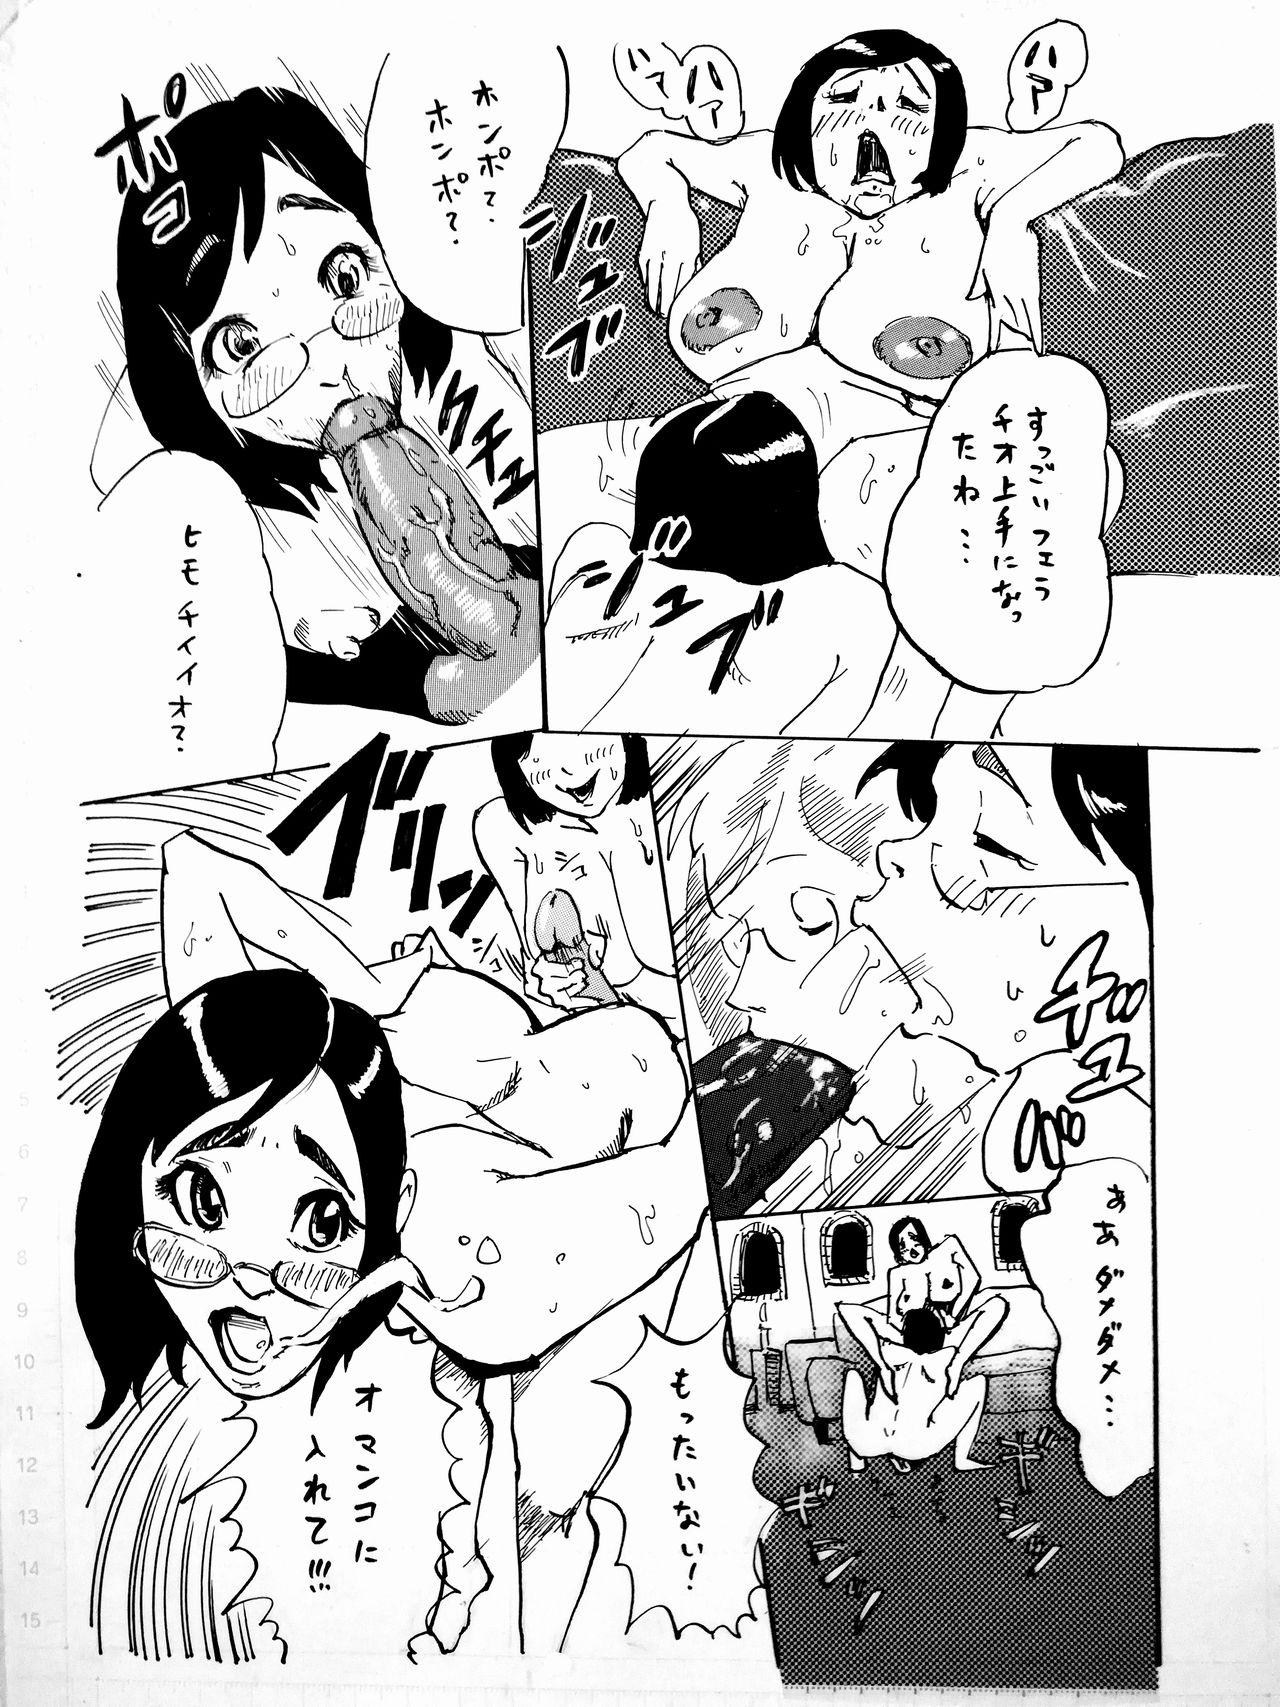 Pay Manga o Kaku no wa Tairyoku ga Iru - Original Teenporn - Picture 1